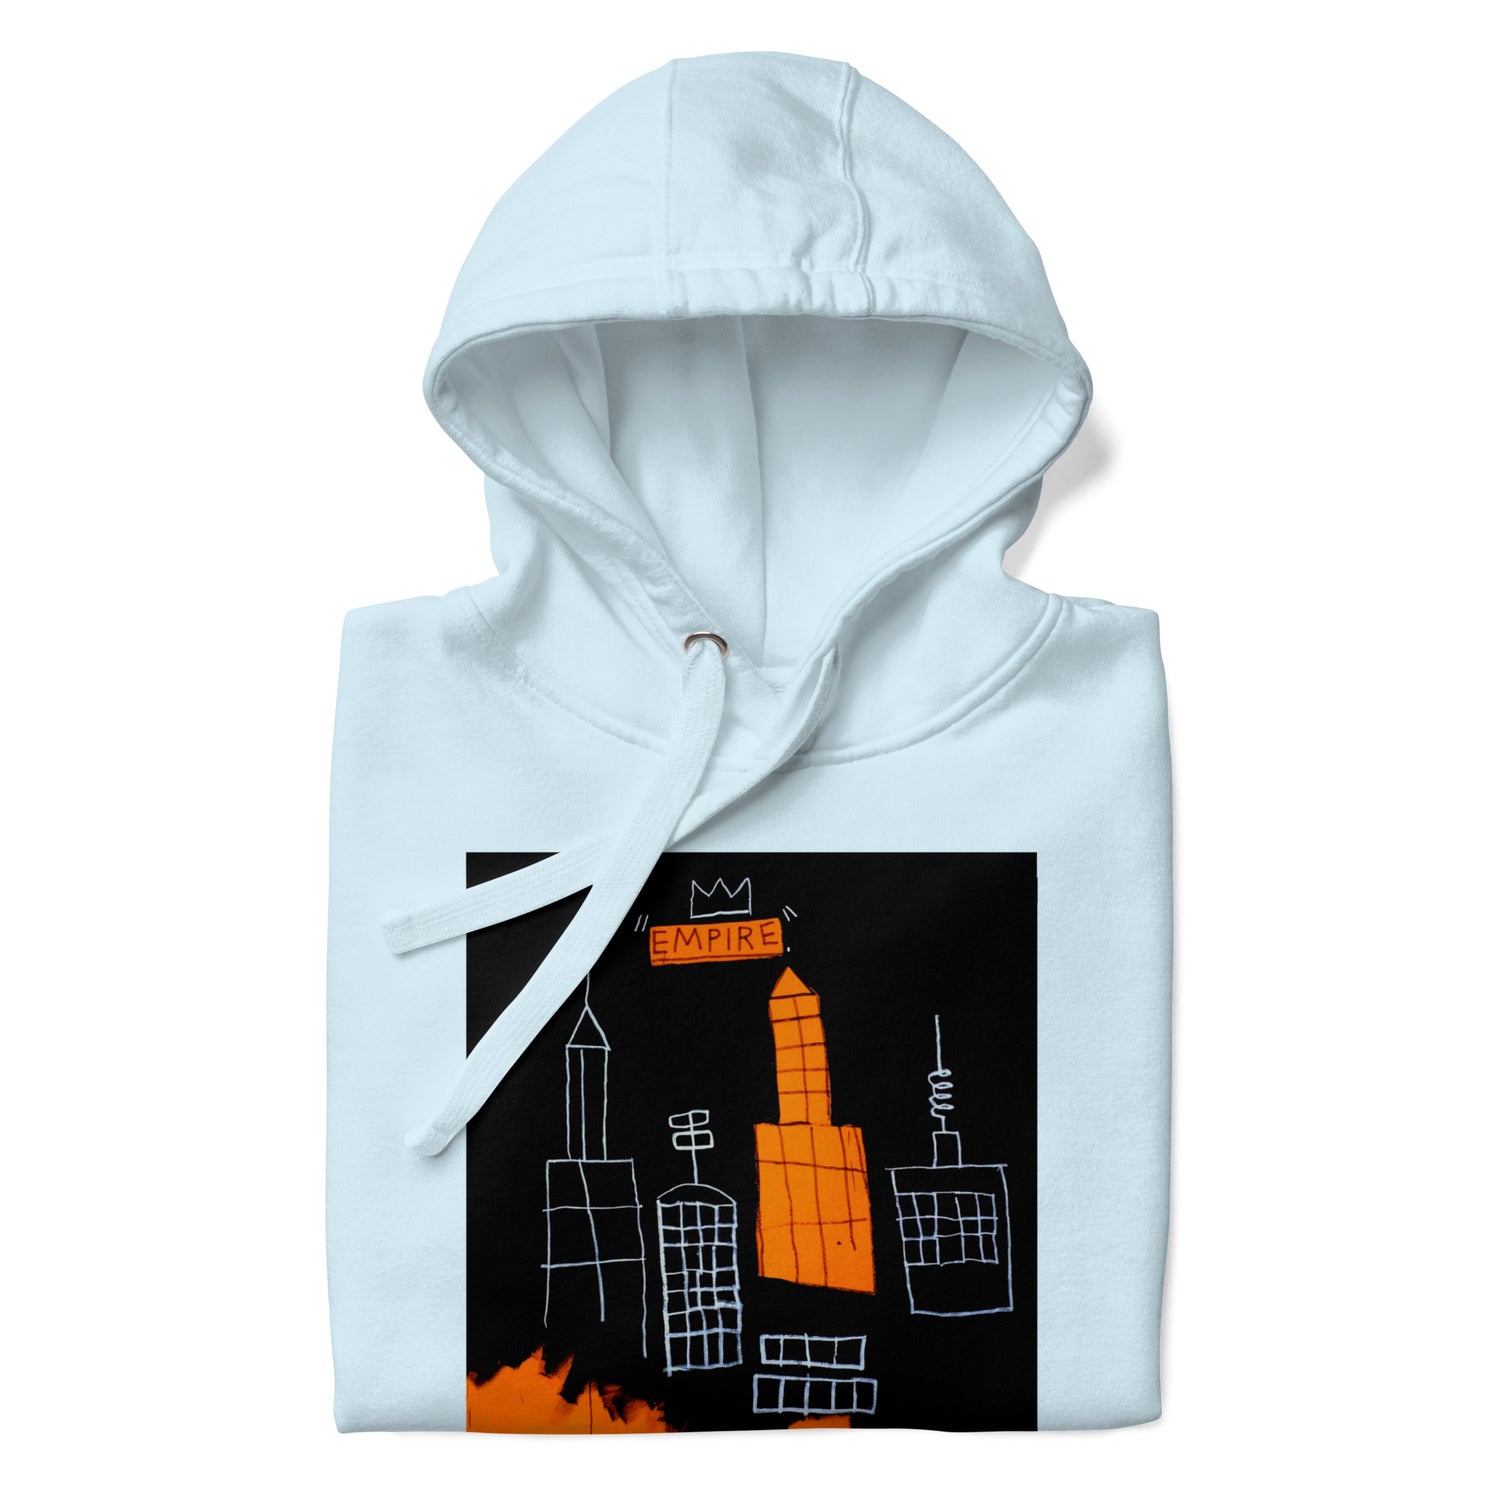 Jean-Michel Basquiat "Mecca" Artwork Printed Premium Streetwear Sweatshirt Hoodie Ice Blue